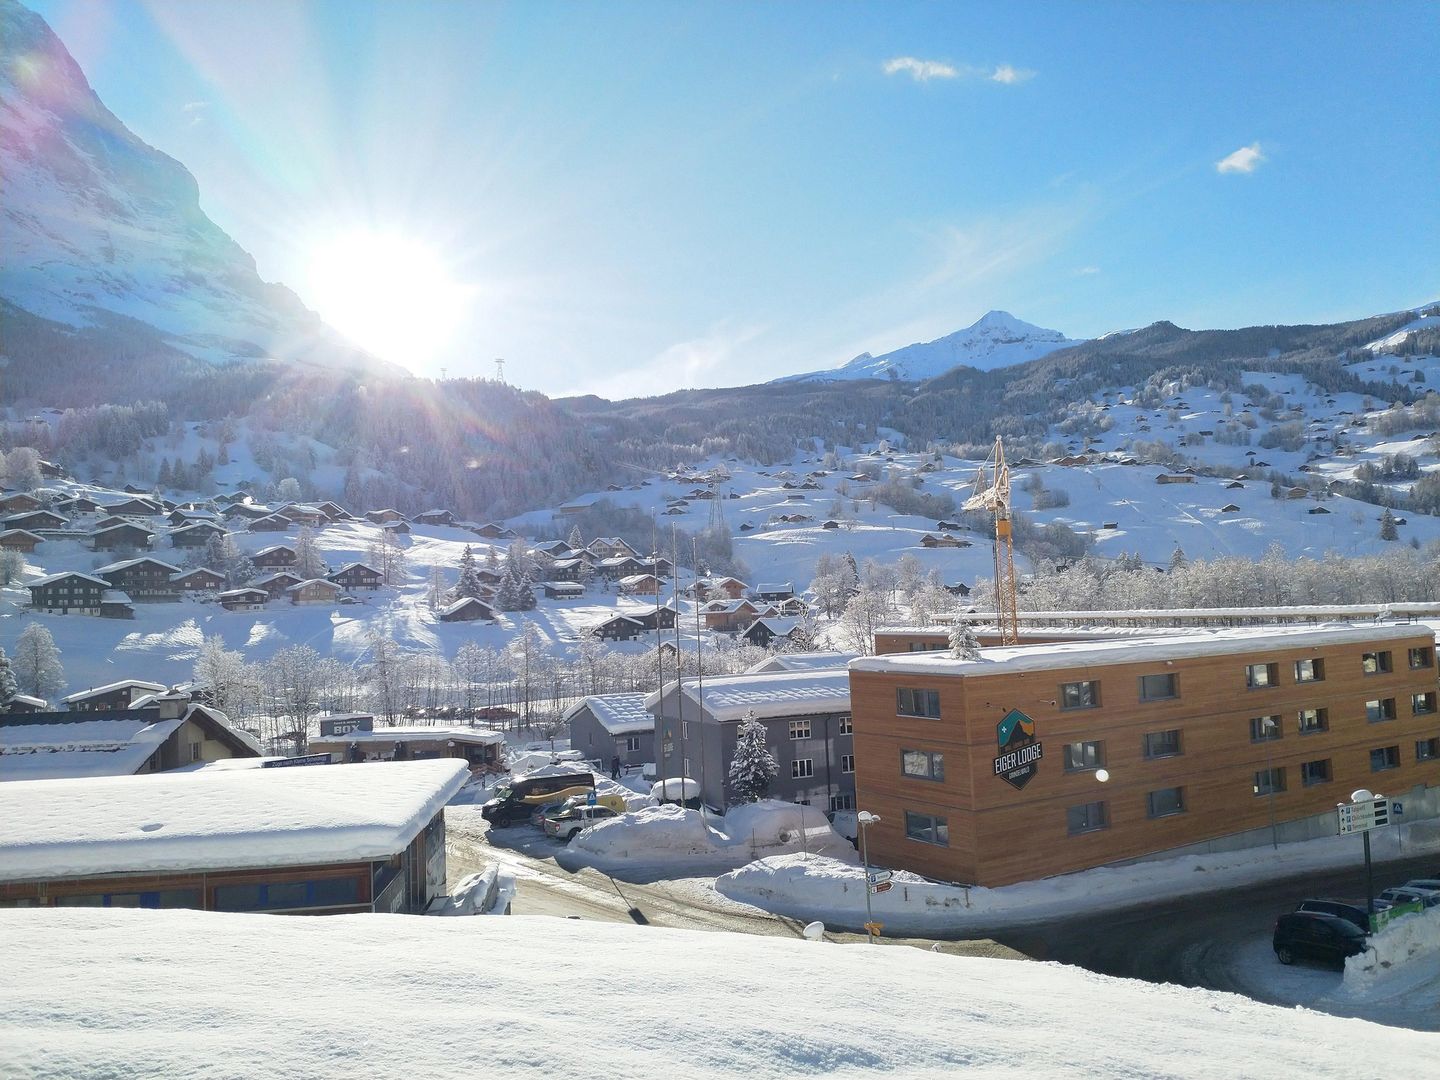 Lekker goedkoop! skivakantie Jungfrau Regio ❄ Eiger Lodge